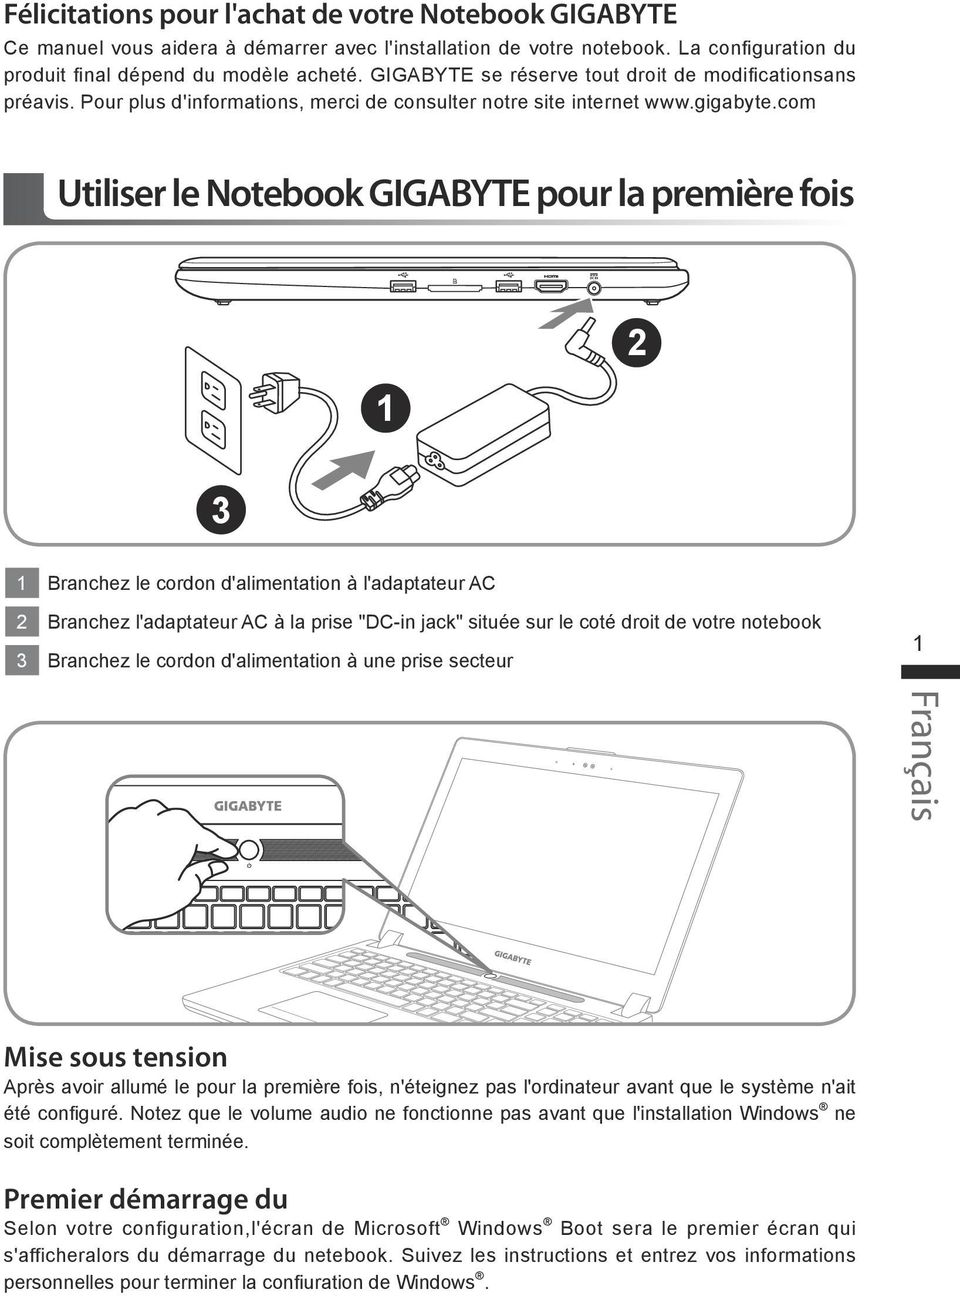 com Utiliser le Notebook GIGABYTE pour la première fois Branchez le cordon d'alimentation à l'adaptateur AC Branchez l'adaptateur AC à la prise "DC-in jack" située sur le coté droit de votre notebook